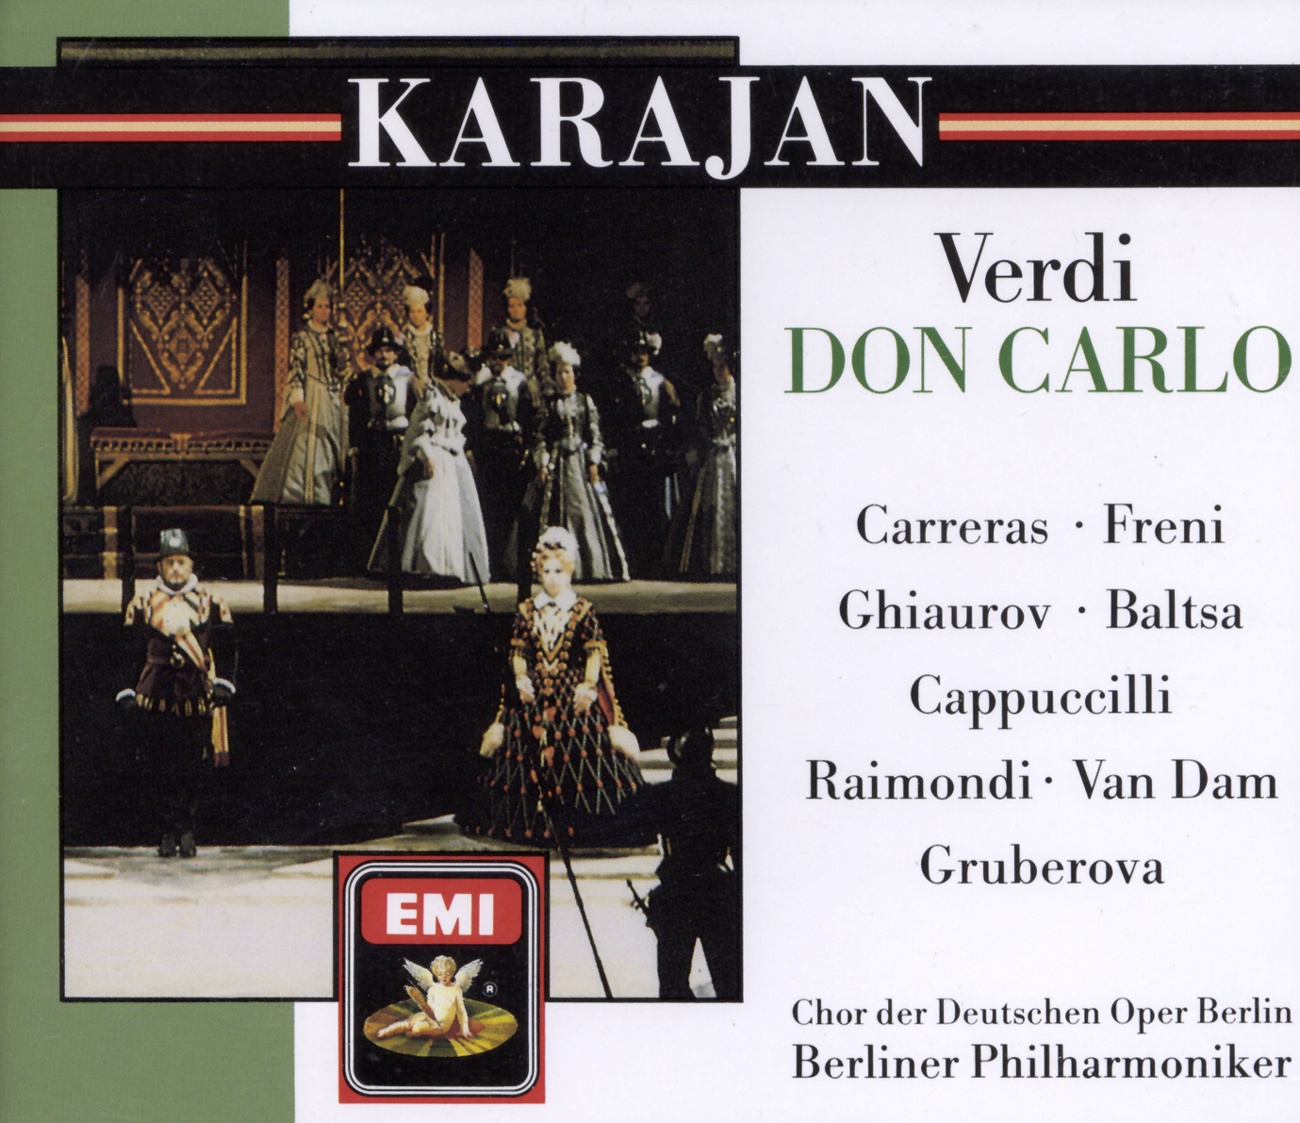 Don Carlo (1884 4 Act Version) (1988 Digital Remaster), ATTO TERZO/ACT 3/DRITTER AKT/TROISIEME ACTE, Scena prima/Scene 1/Erste Szene/Première Scène: Ella giammai m'amò (Filippo)